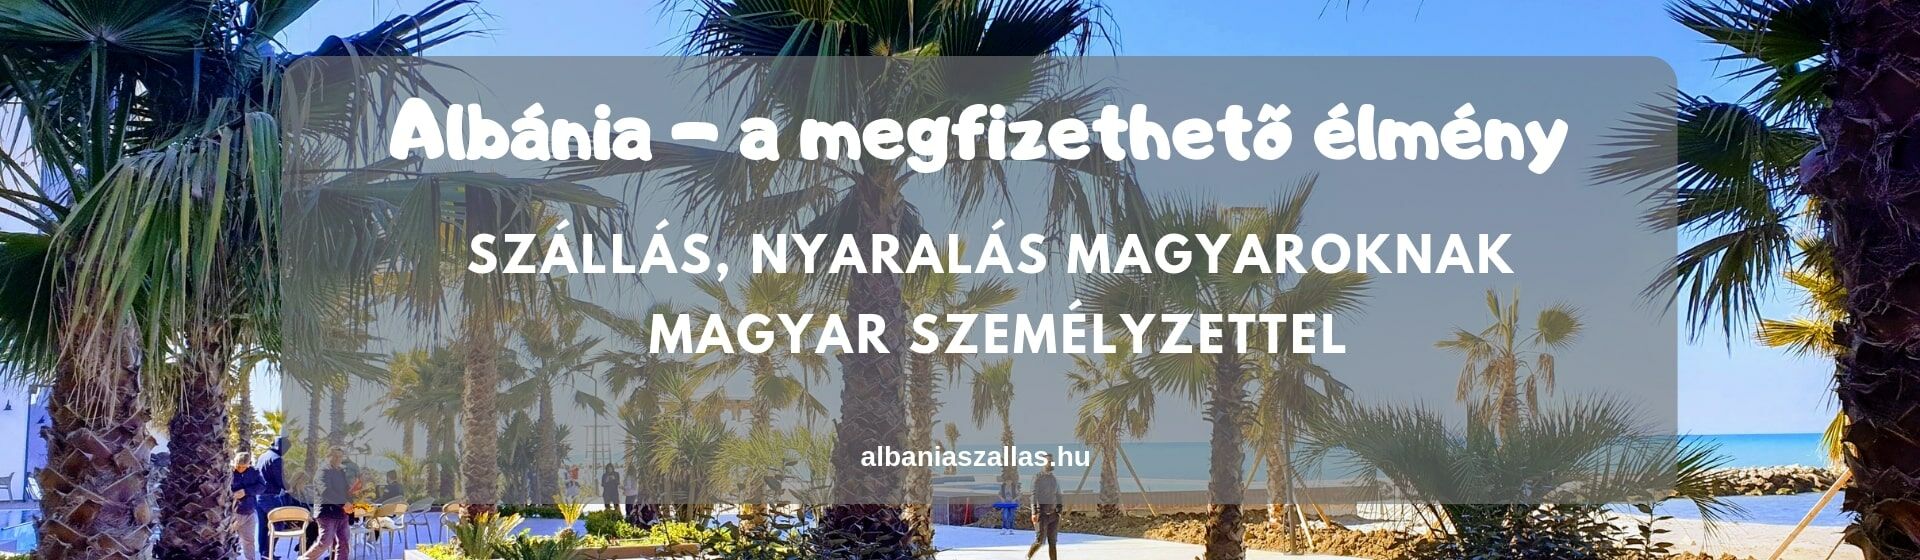 Albánia szállás, nyaralás Magyaroknak